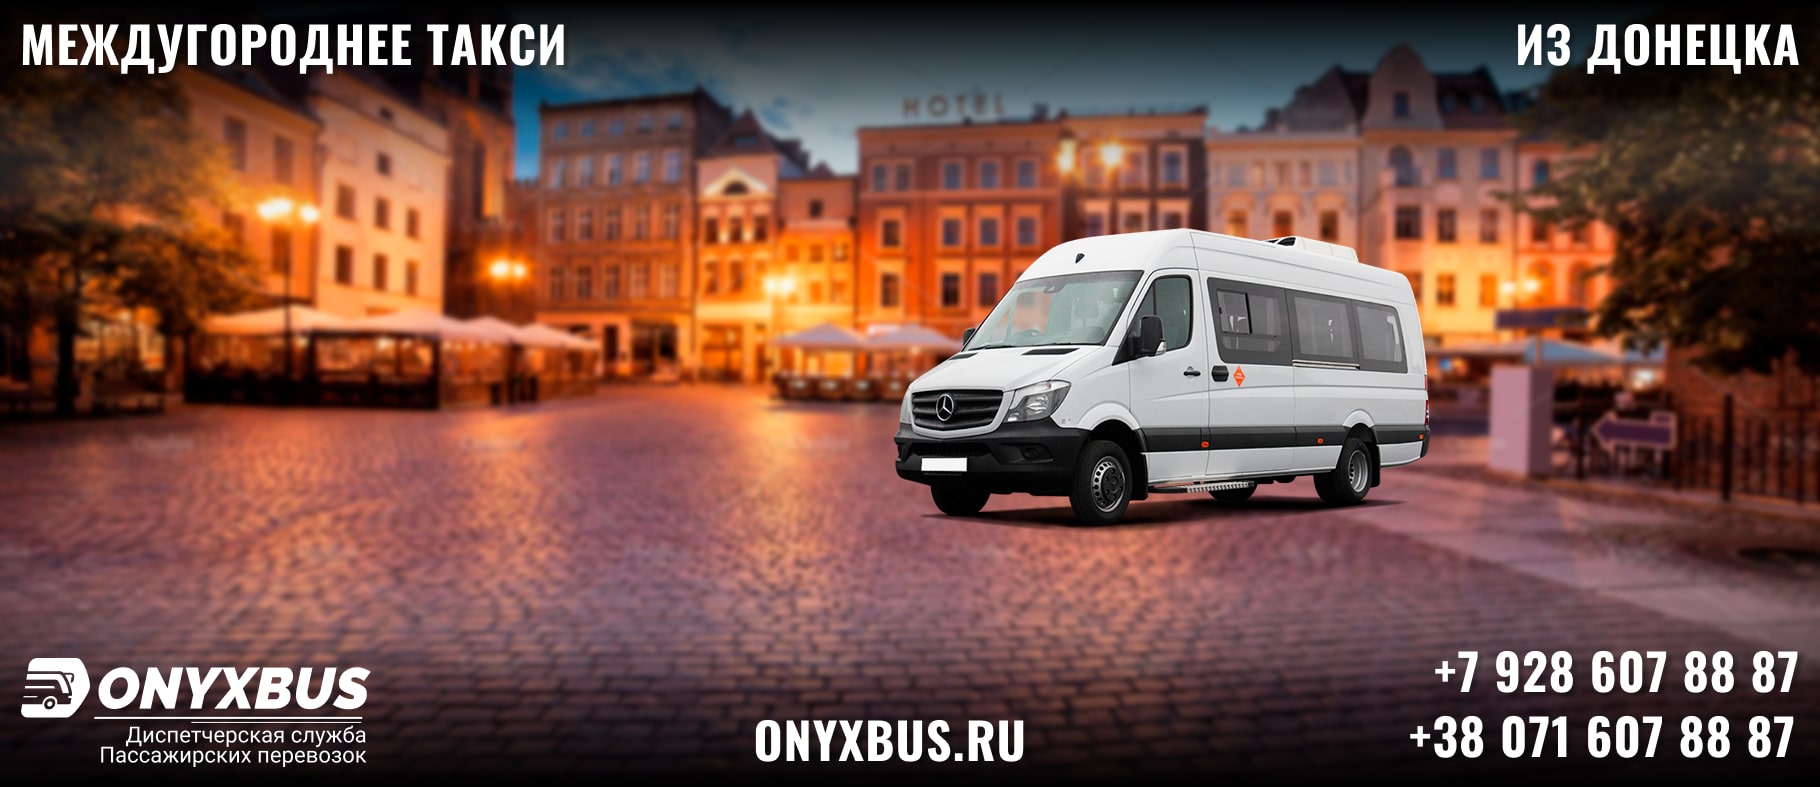 Заказ <br>Микроавтобуса Донецк - Ставрополь